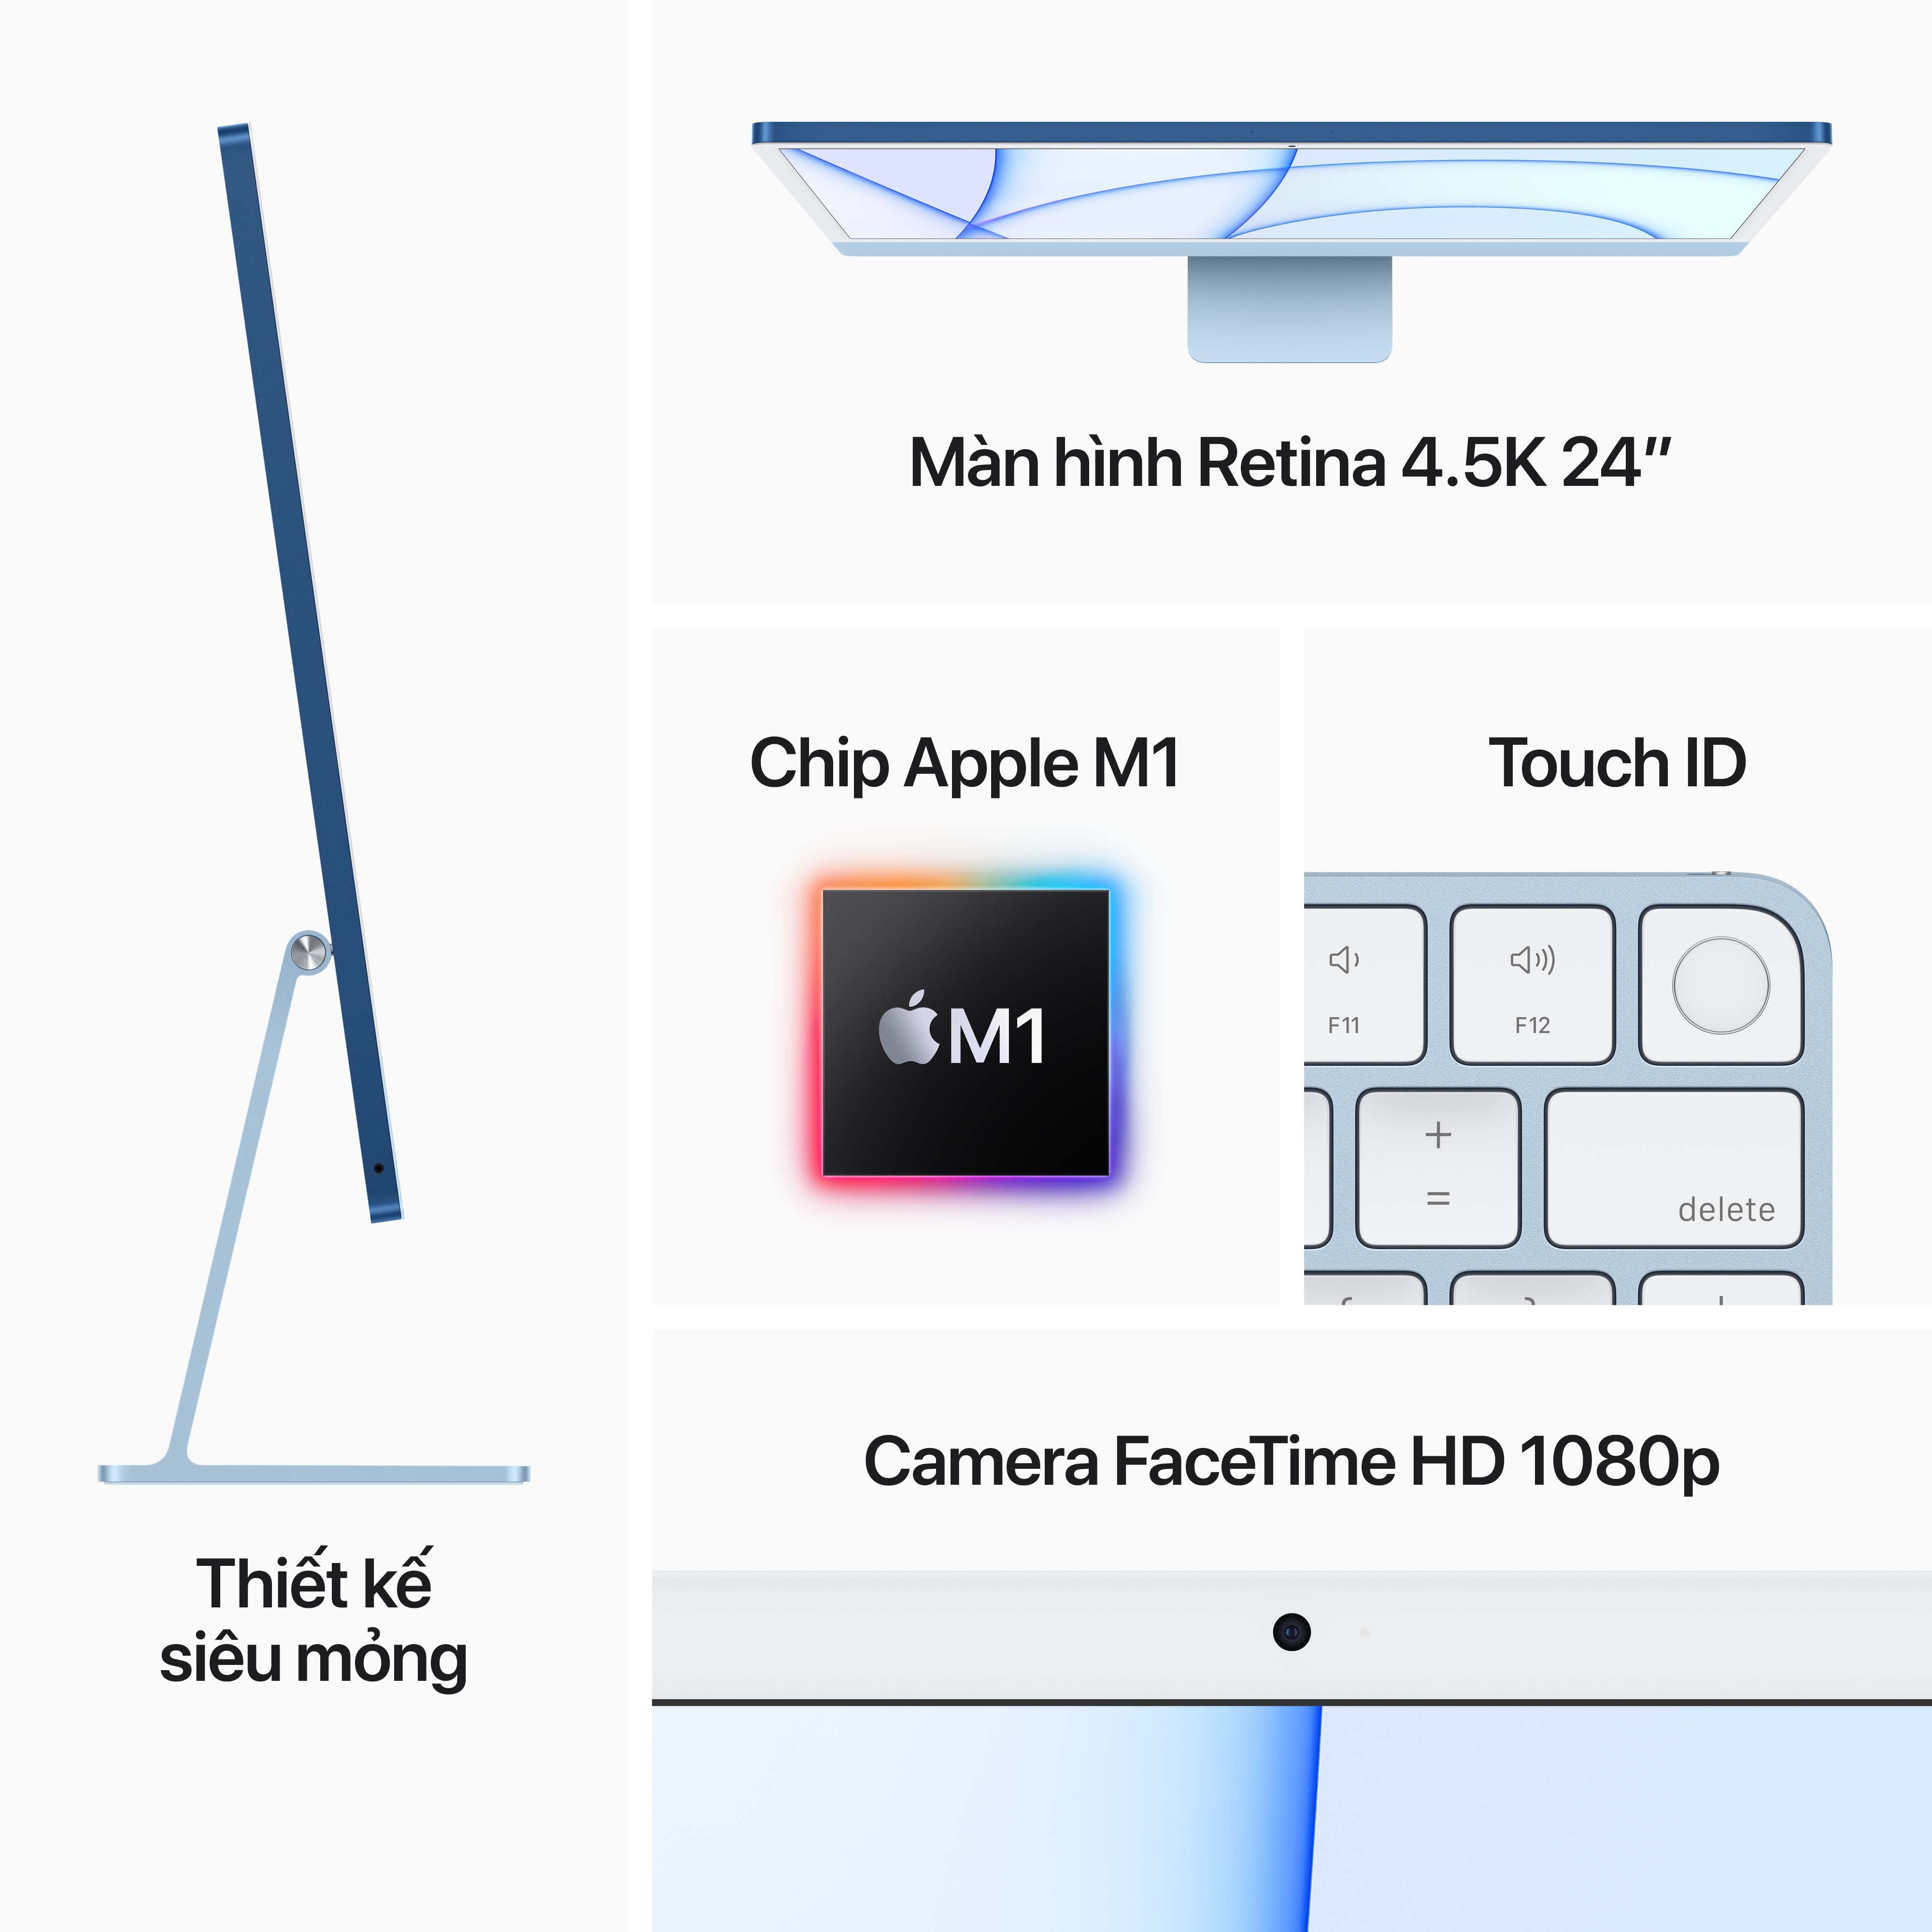 iMac 24 inches 2021 4.5K M1/256GB/8-Core GPU - Hàng Chính Hãng